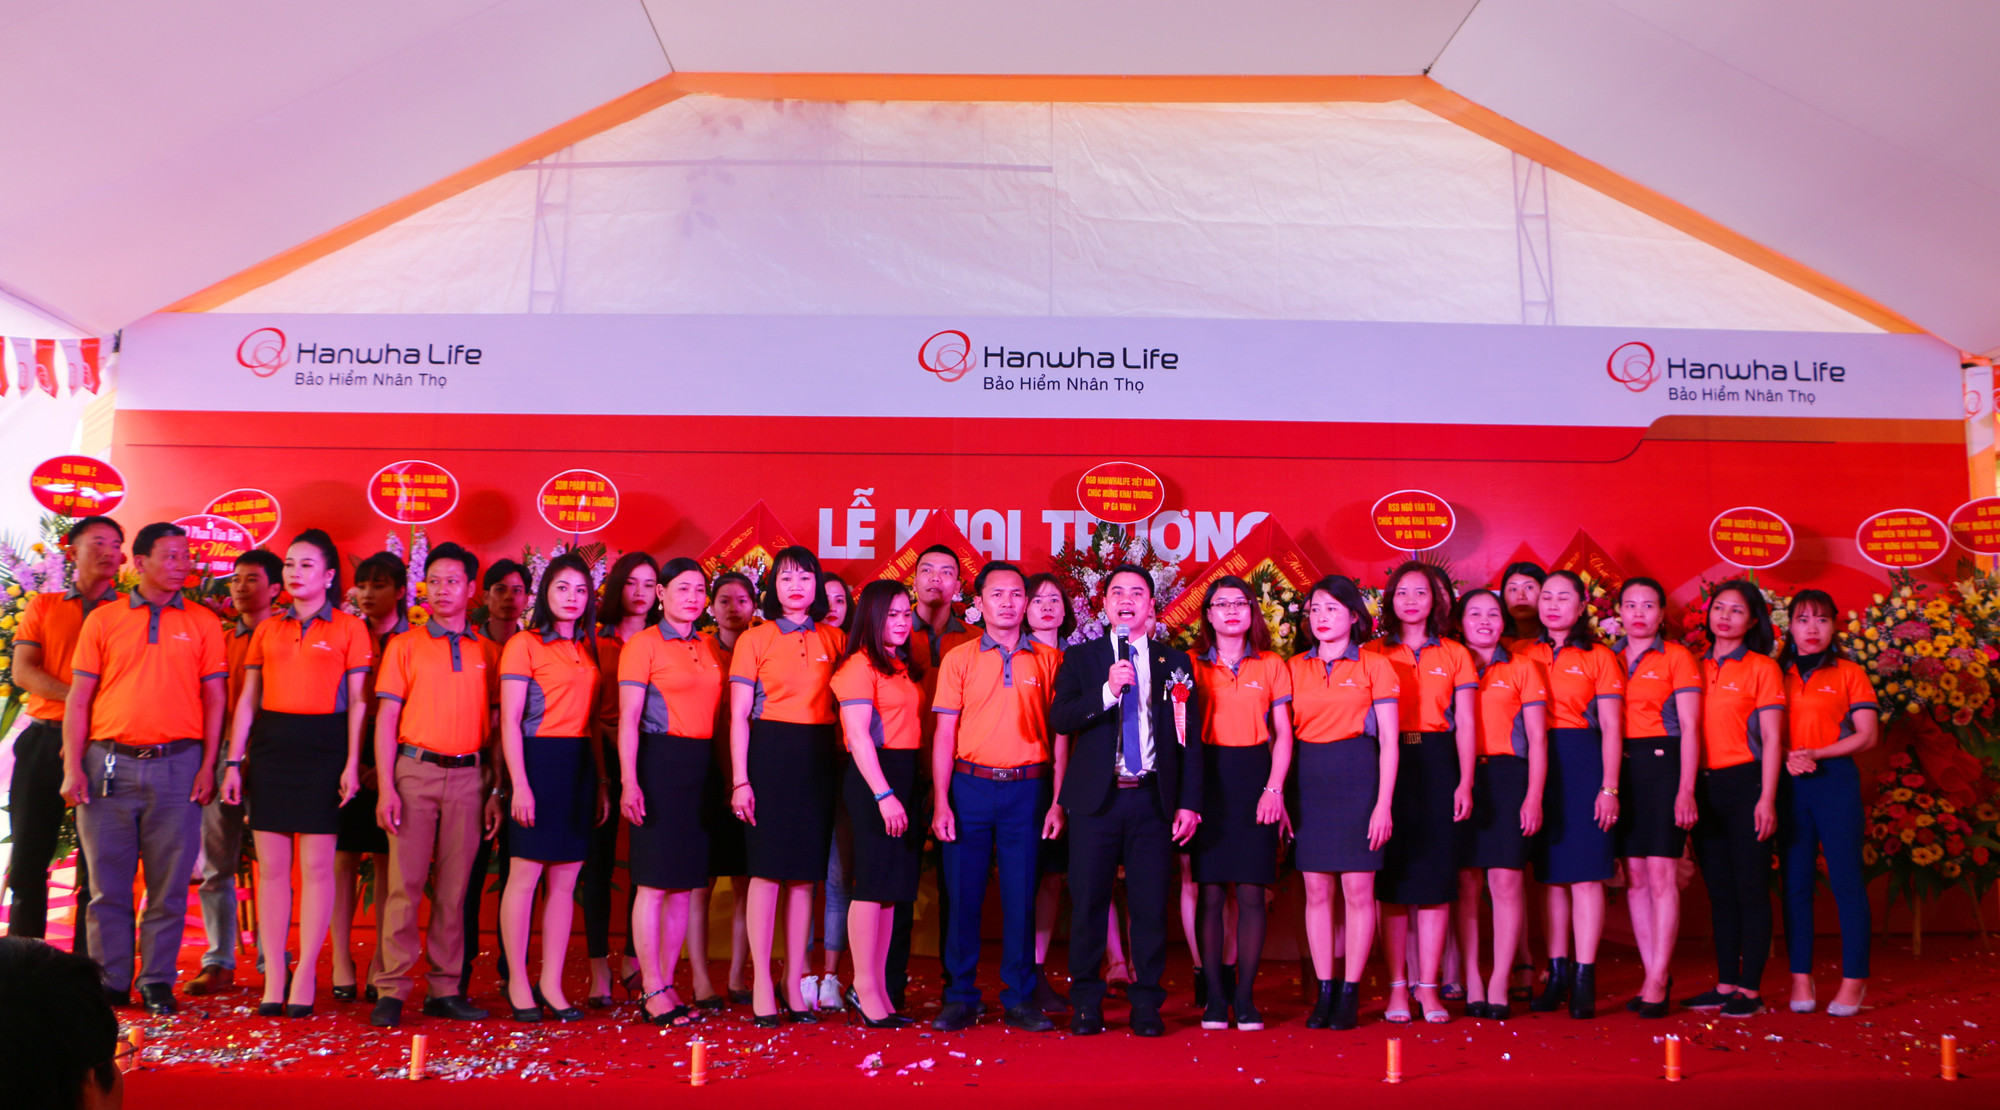 ÔnG Bùi Văn Phong - Giám đốc Văn phòng Tổng đại lý Hanwha Life Vinh 4 cùng tập thể cán bộ của mình ra mắt cam kết thực hiện trách nhiệm của Doanh nghiệp Bảo hiểm. Ảnh: Nguyễn Hải